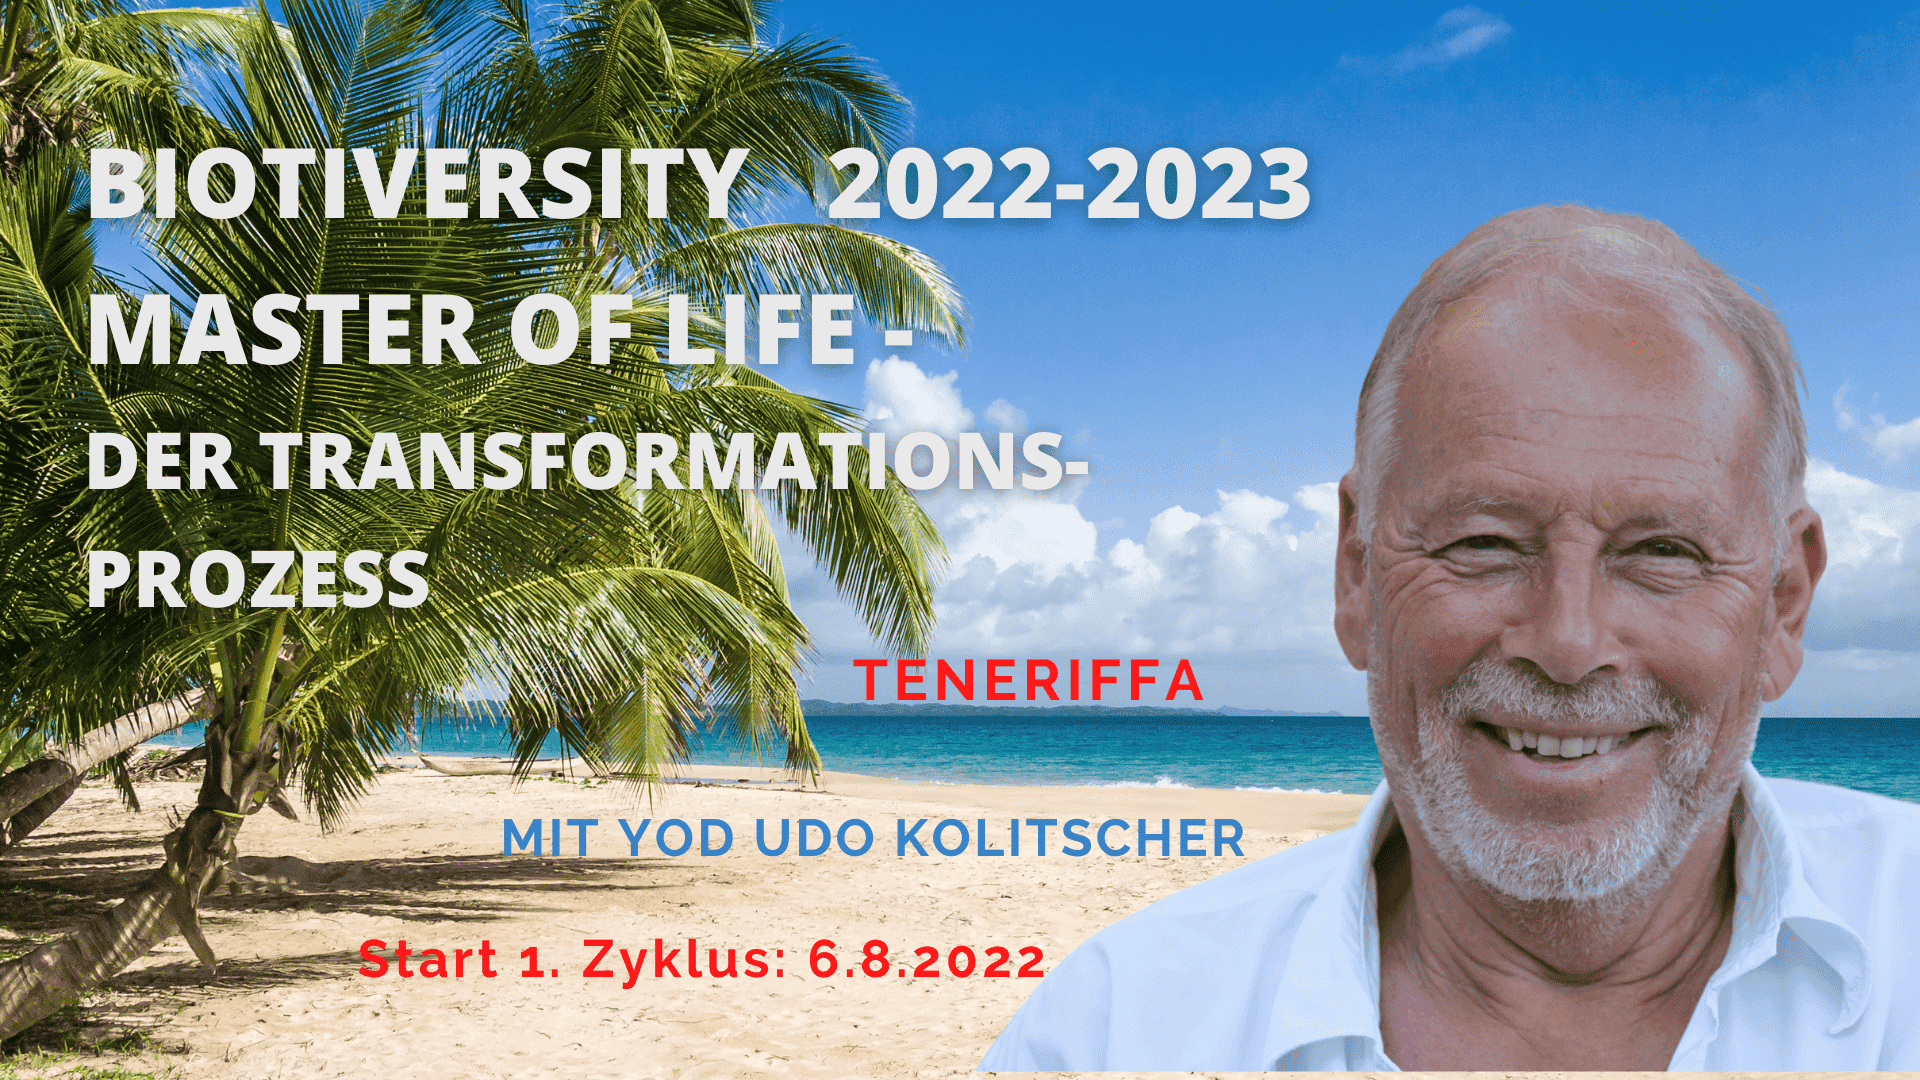 Biotiversity 2022-2023 - Start 6.8.22